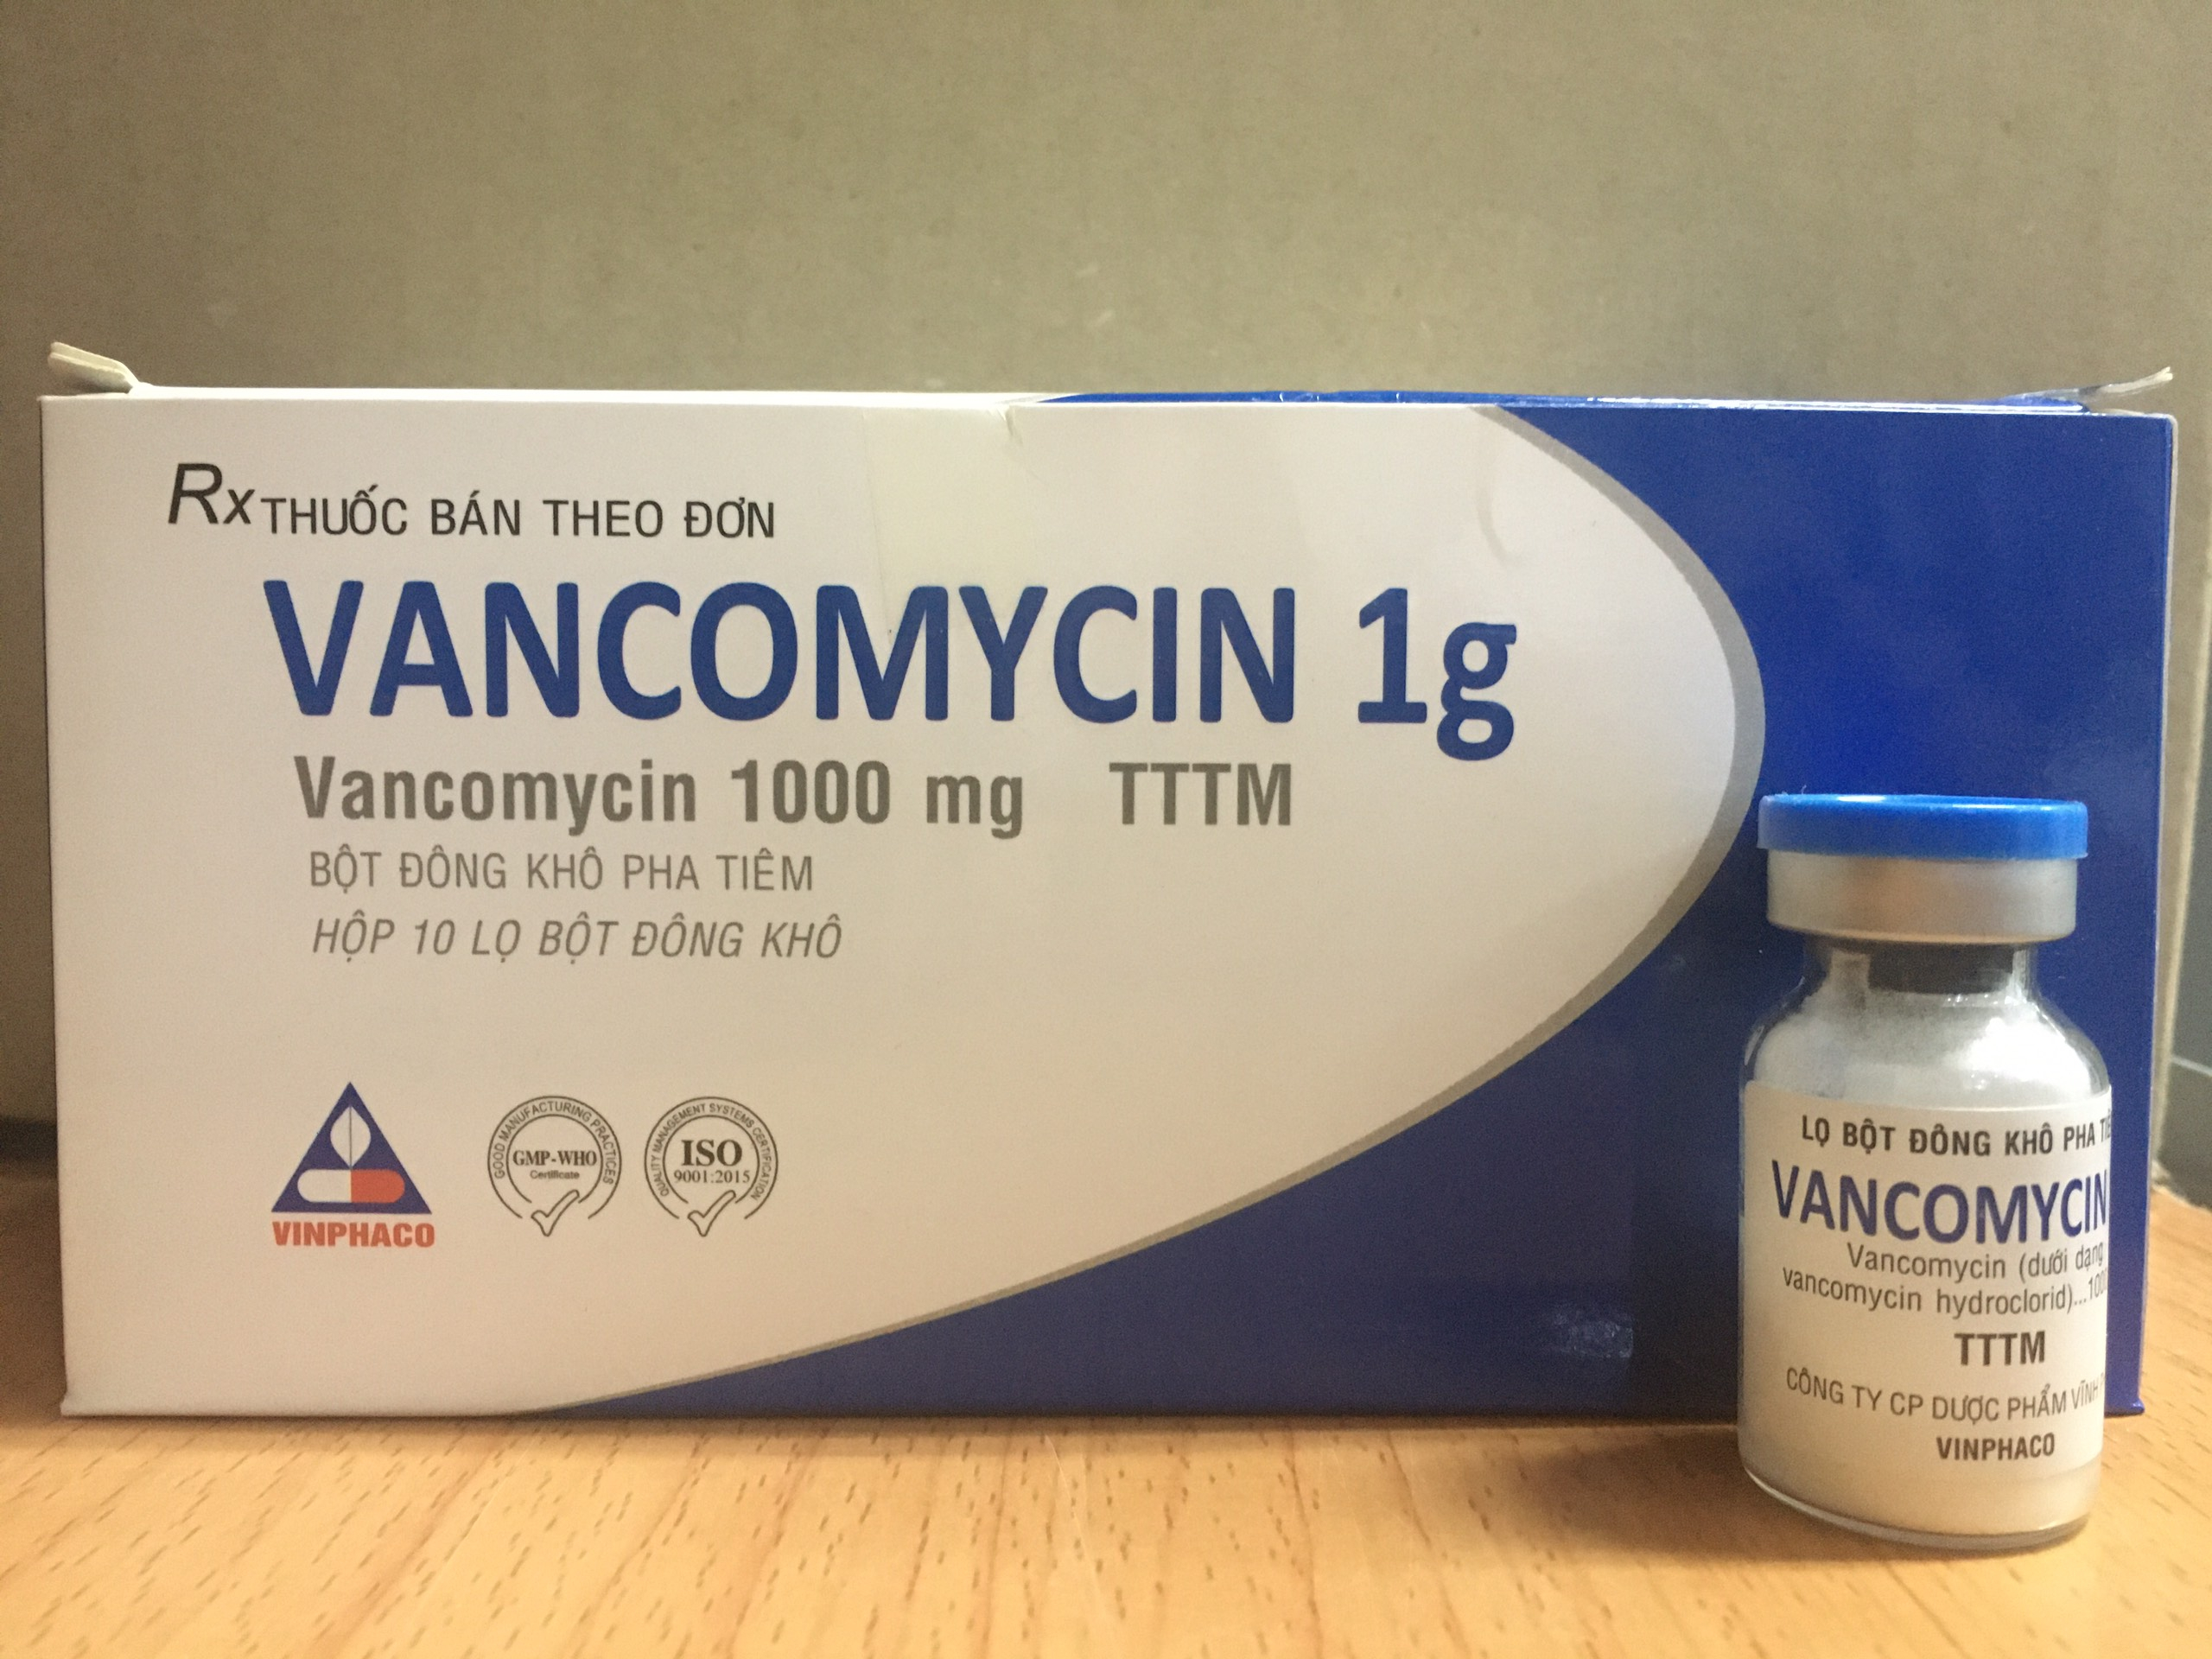 Giám sát nồng độ vancomycin trong điều trị nhiễm khuẩn nặng do mrsa: hướng dẫn đồng thuận cập nhật năm 2020